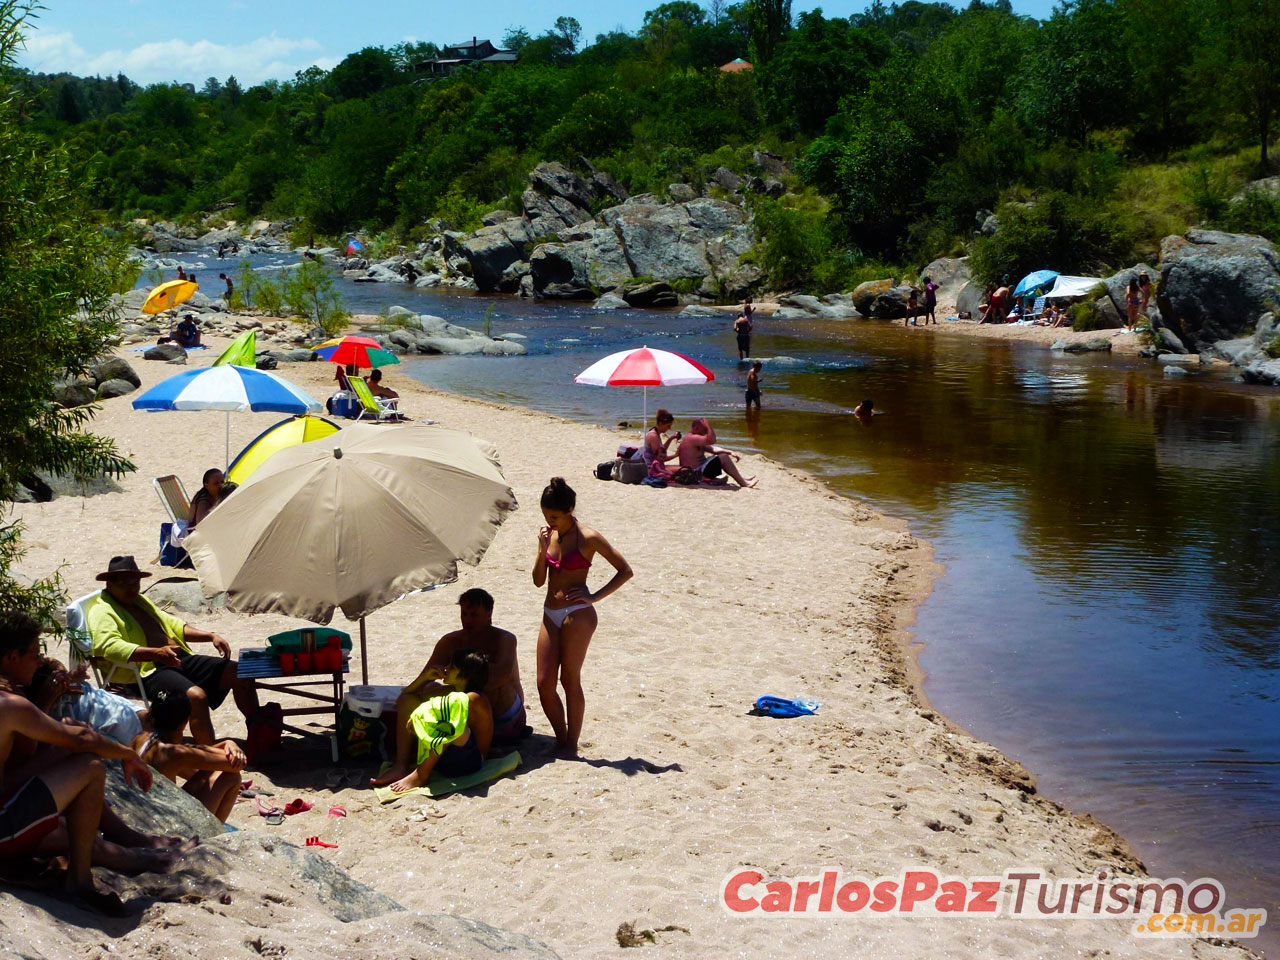 Playas de Cuesta Blanca - Imagen: Carlospazturismo.com.ar